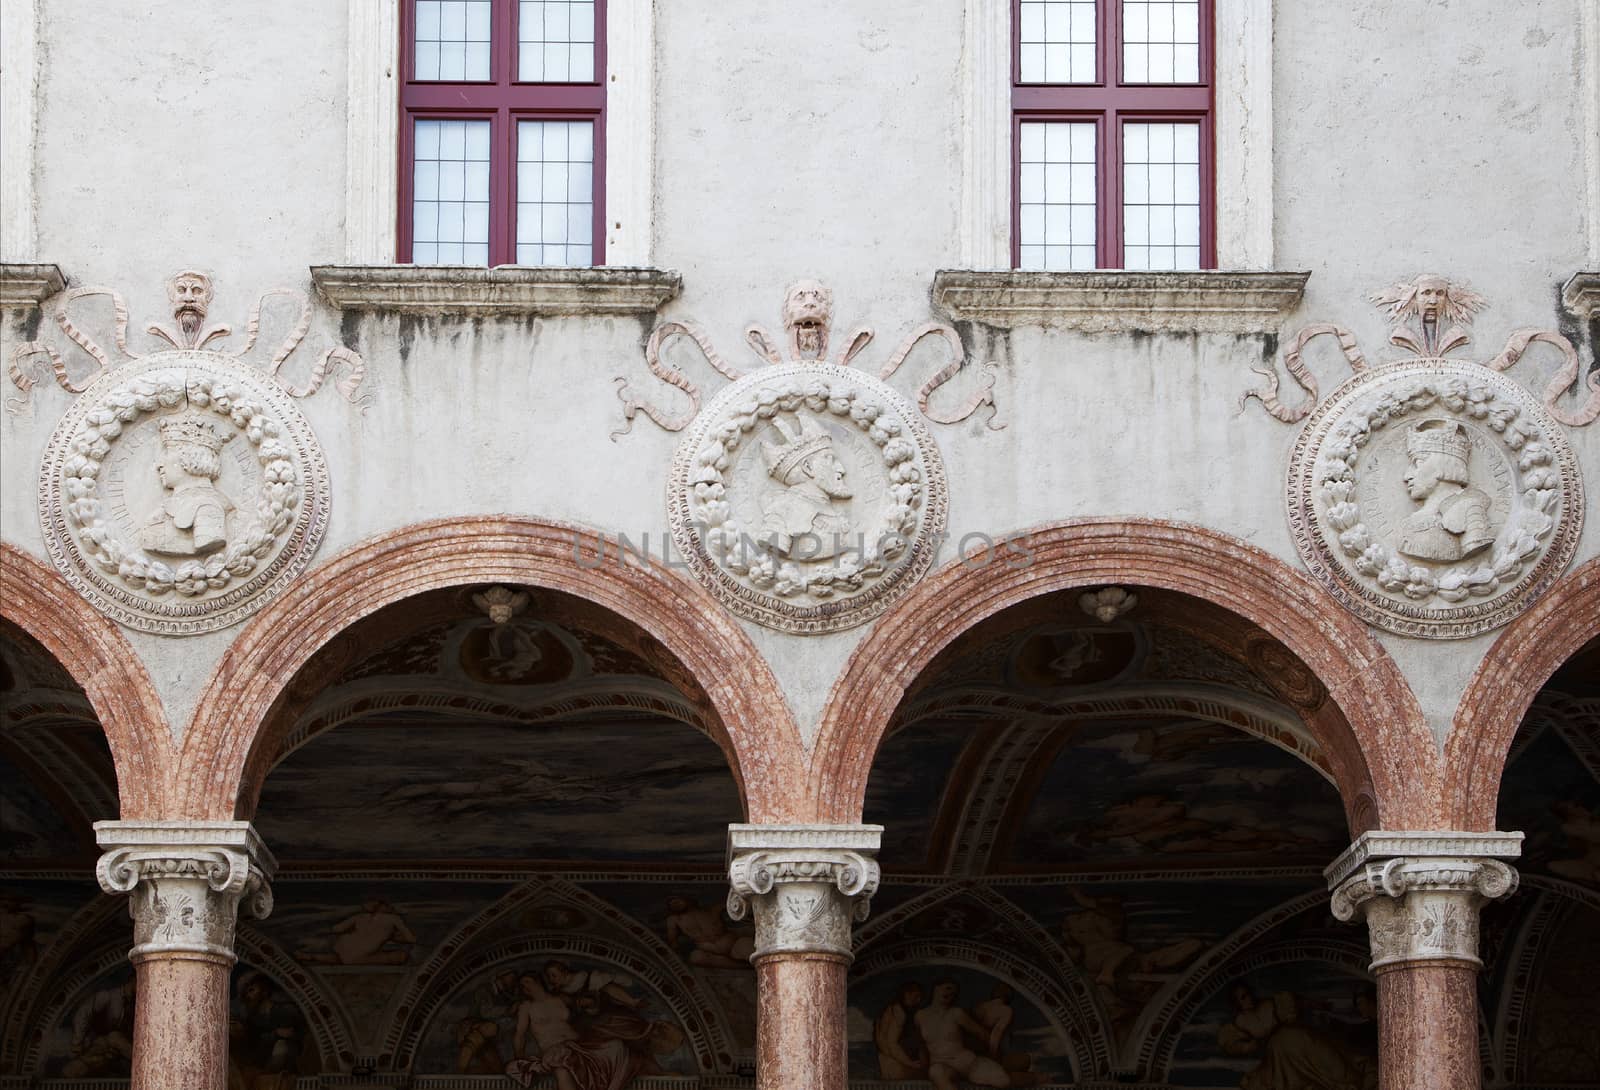 Arcade in castello Buonconsiglio, Trento, Northern Italy